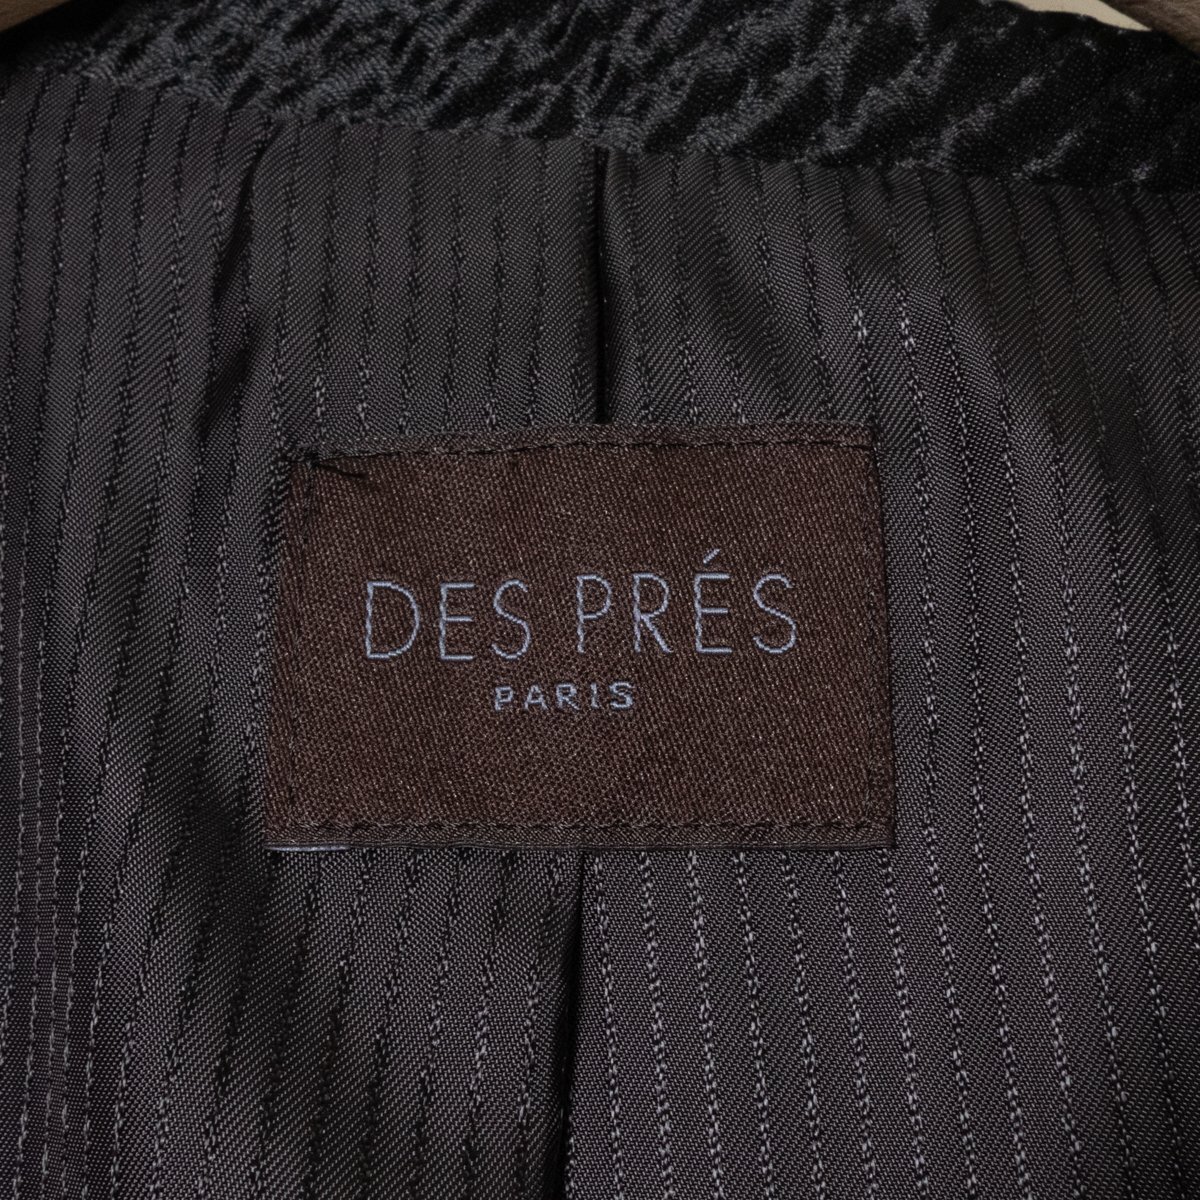 DES PRES デプレ ロングコート アウター 上着 羽織 肩パッドなし 1 ウール ブラック 黒 綺麗め カジュアル_画像2